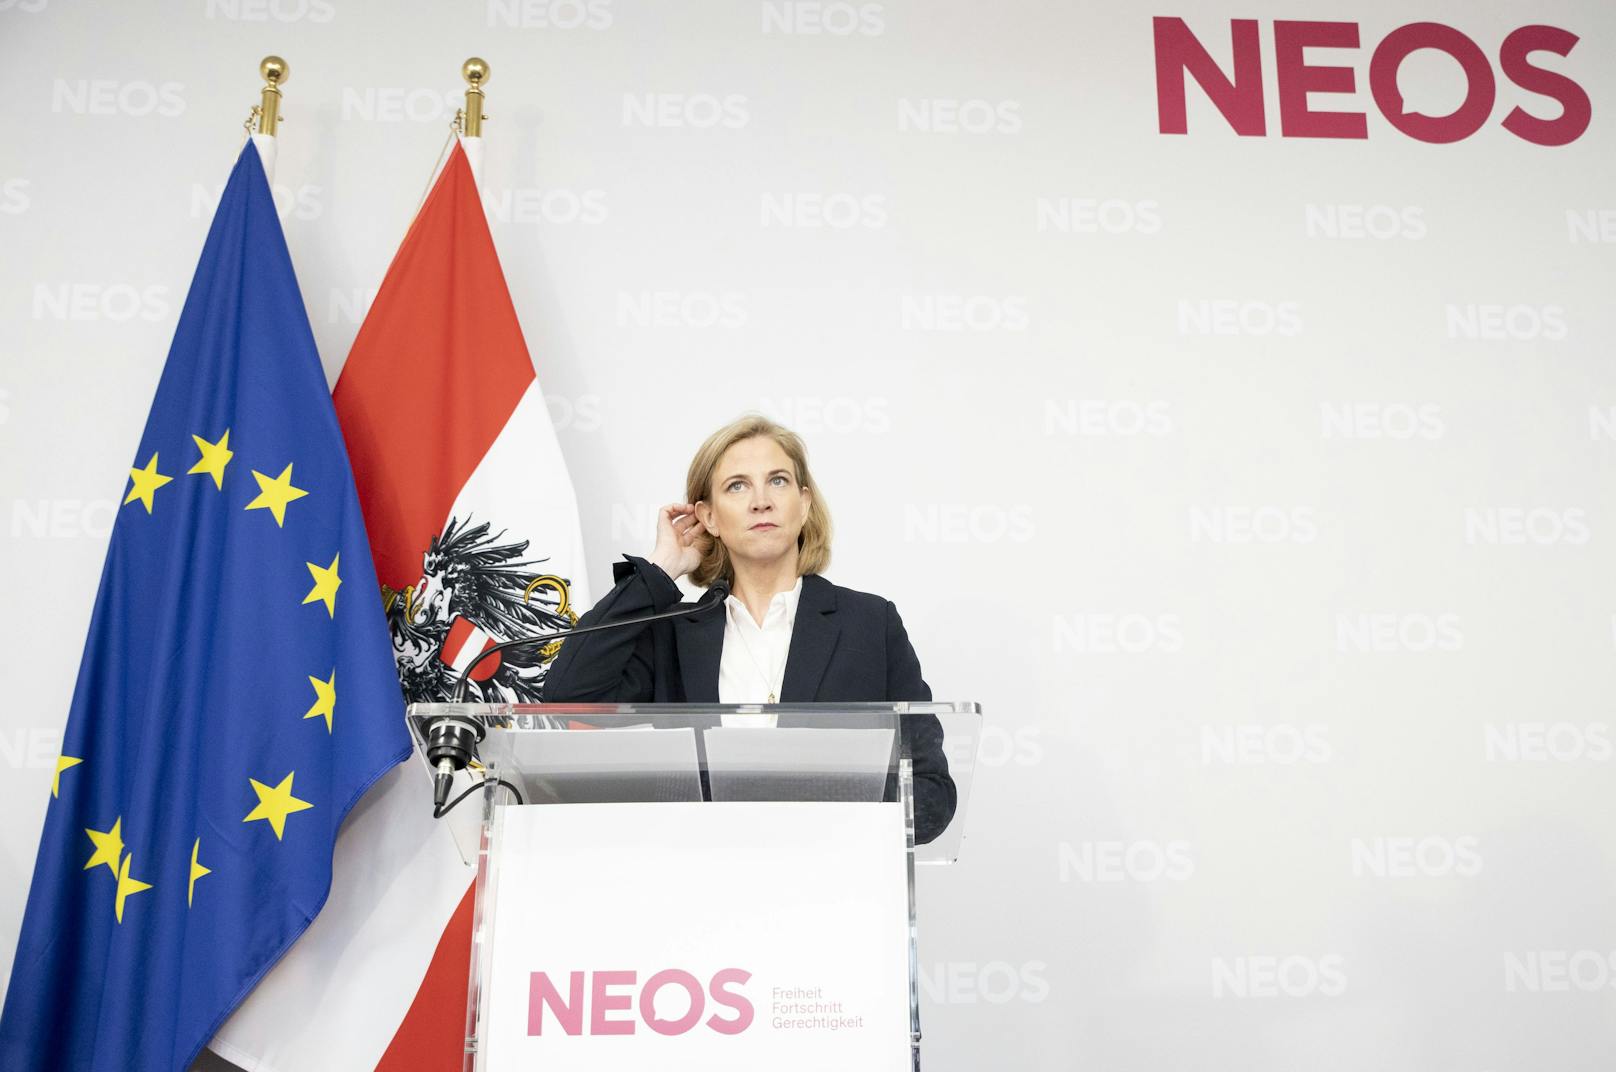 "Koalitionsbruch": Neos fordern nach ÖVP-Mail Neuwahlen